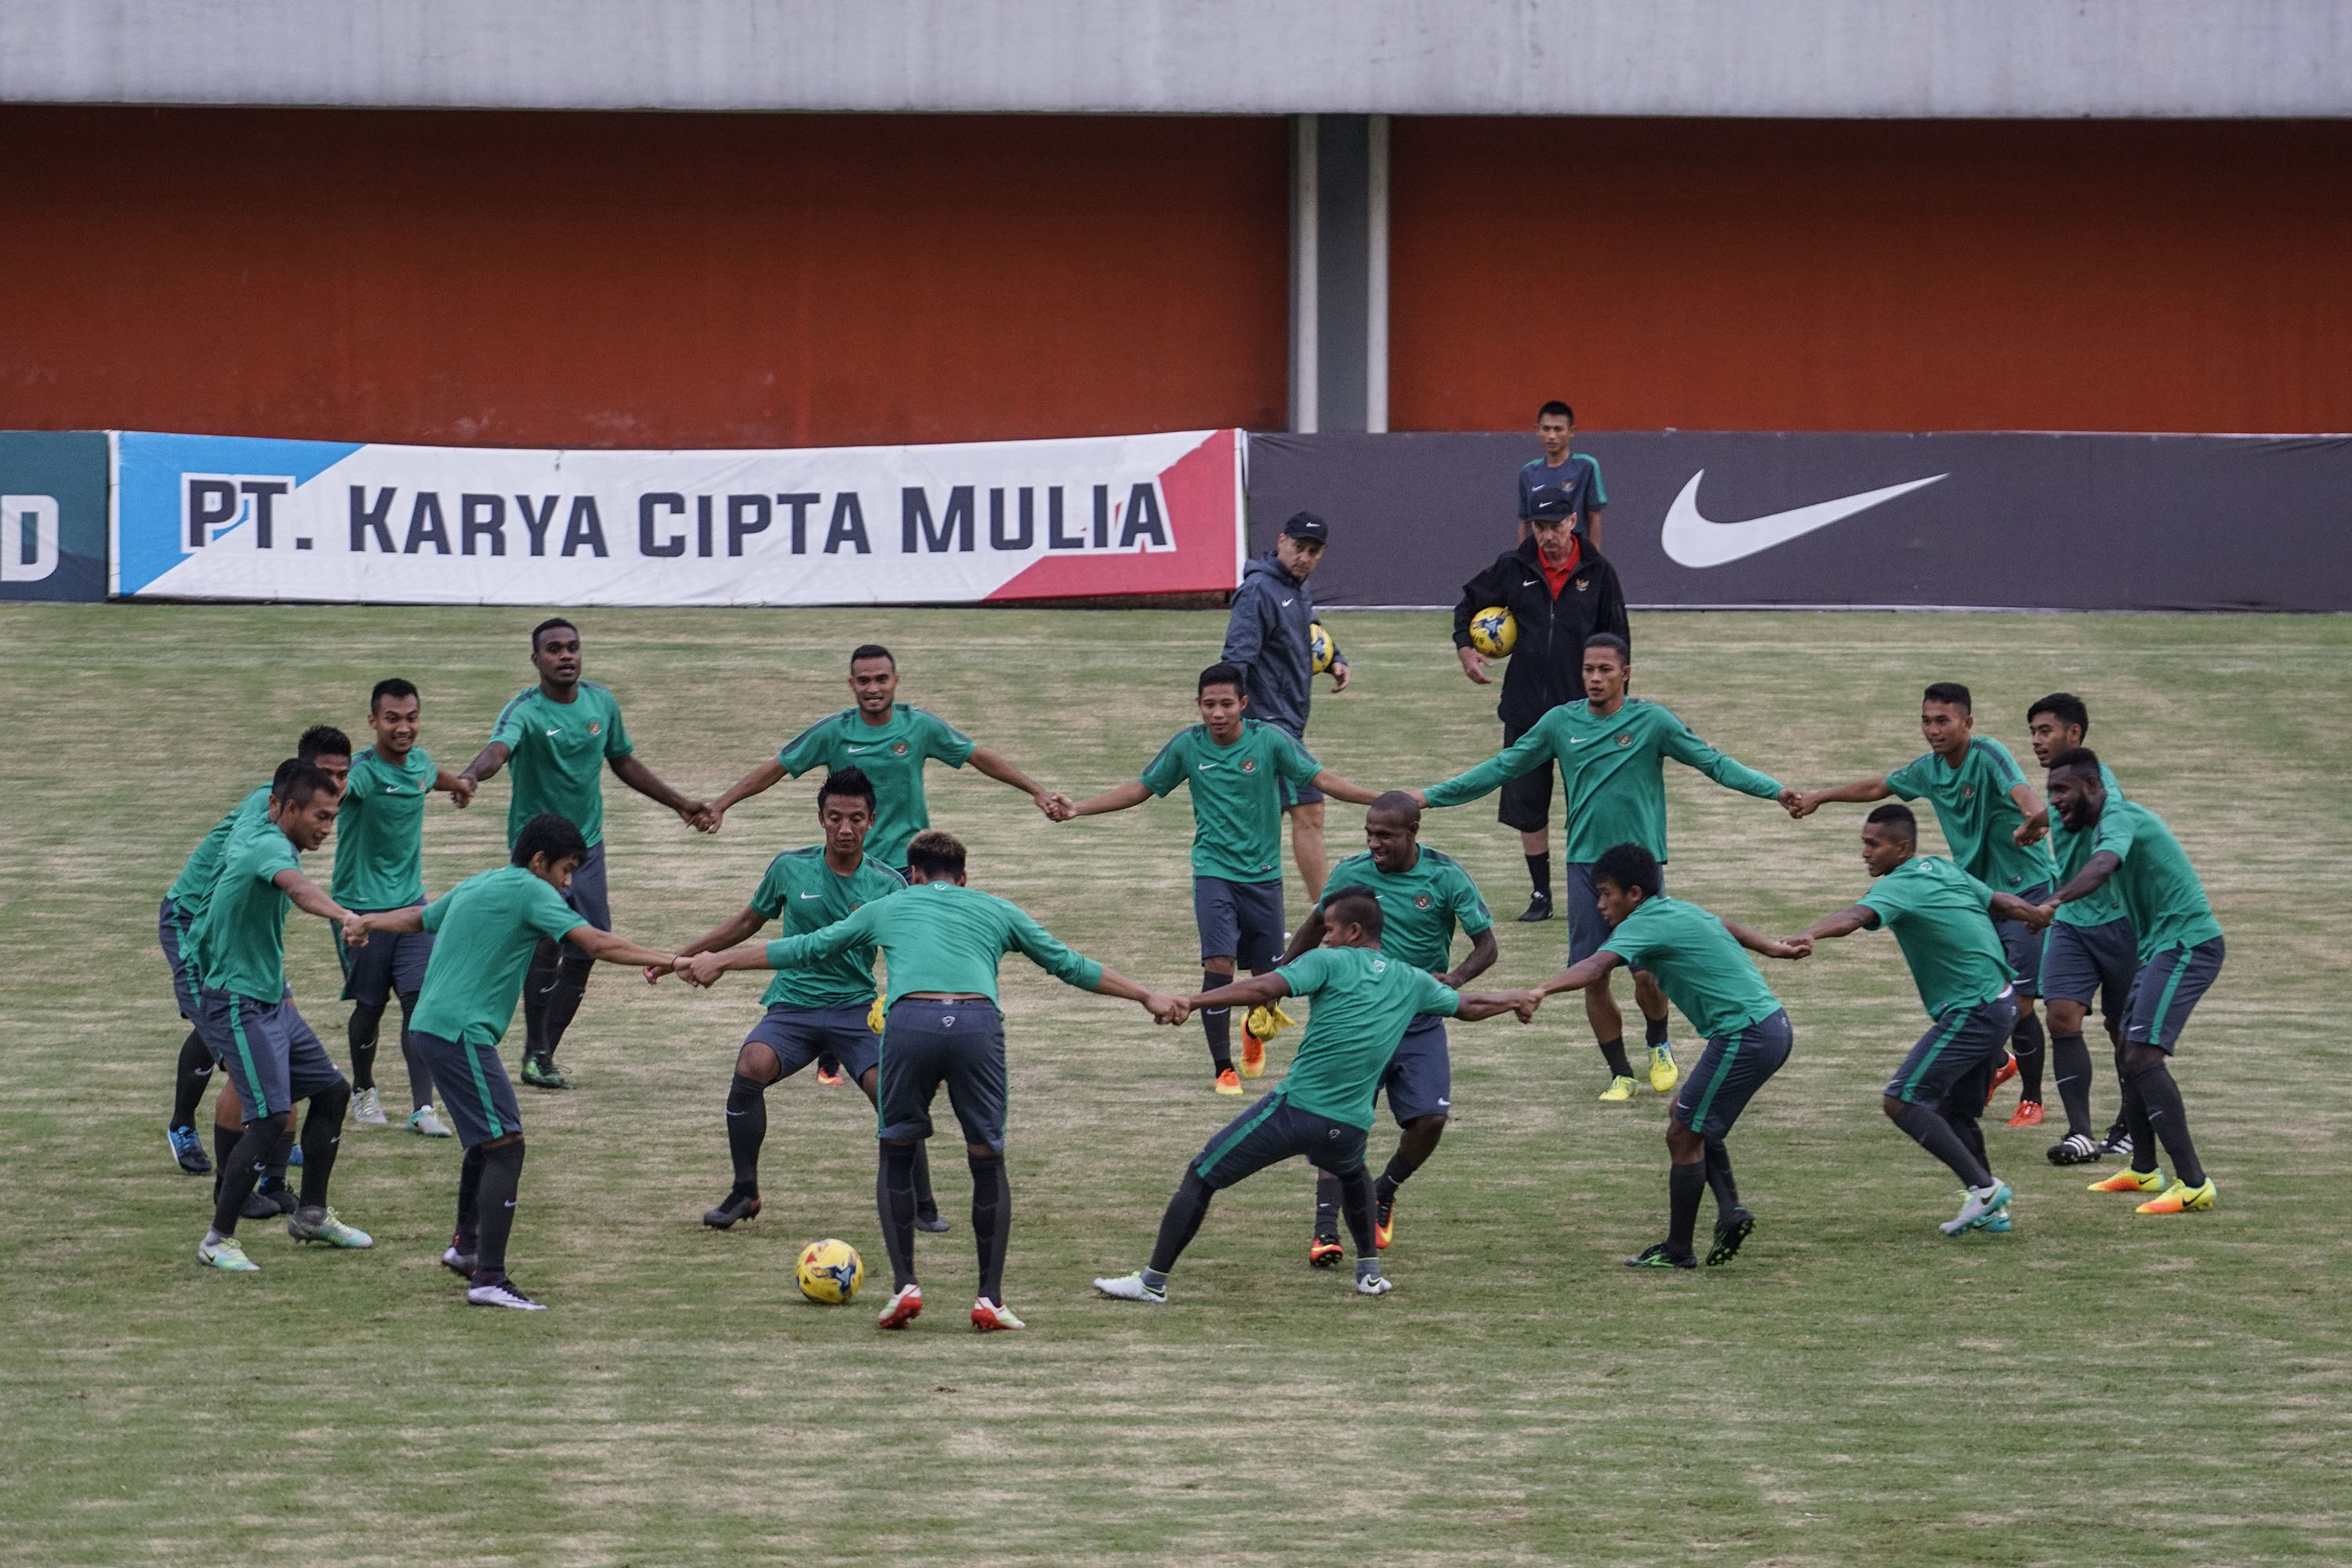 Pemain timnas Indonesia mengikuti pemusatan latihan di Stadion Maguwoharjo, Sleman, jelang turnamen Piala AFF 2016. Foto oleh Hendra Nurdiyansyah/Antara 